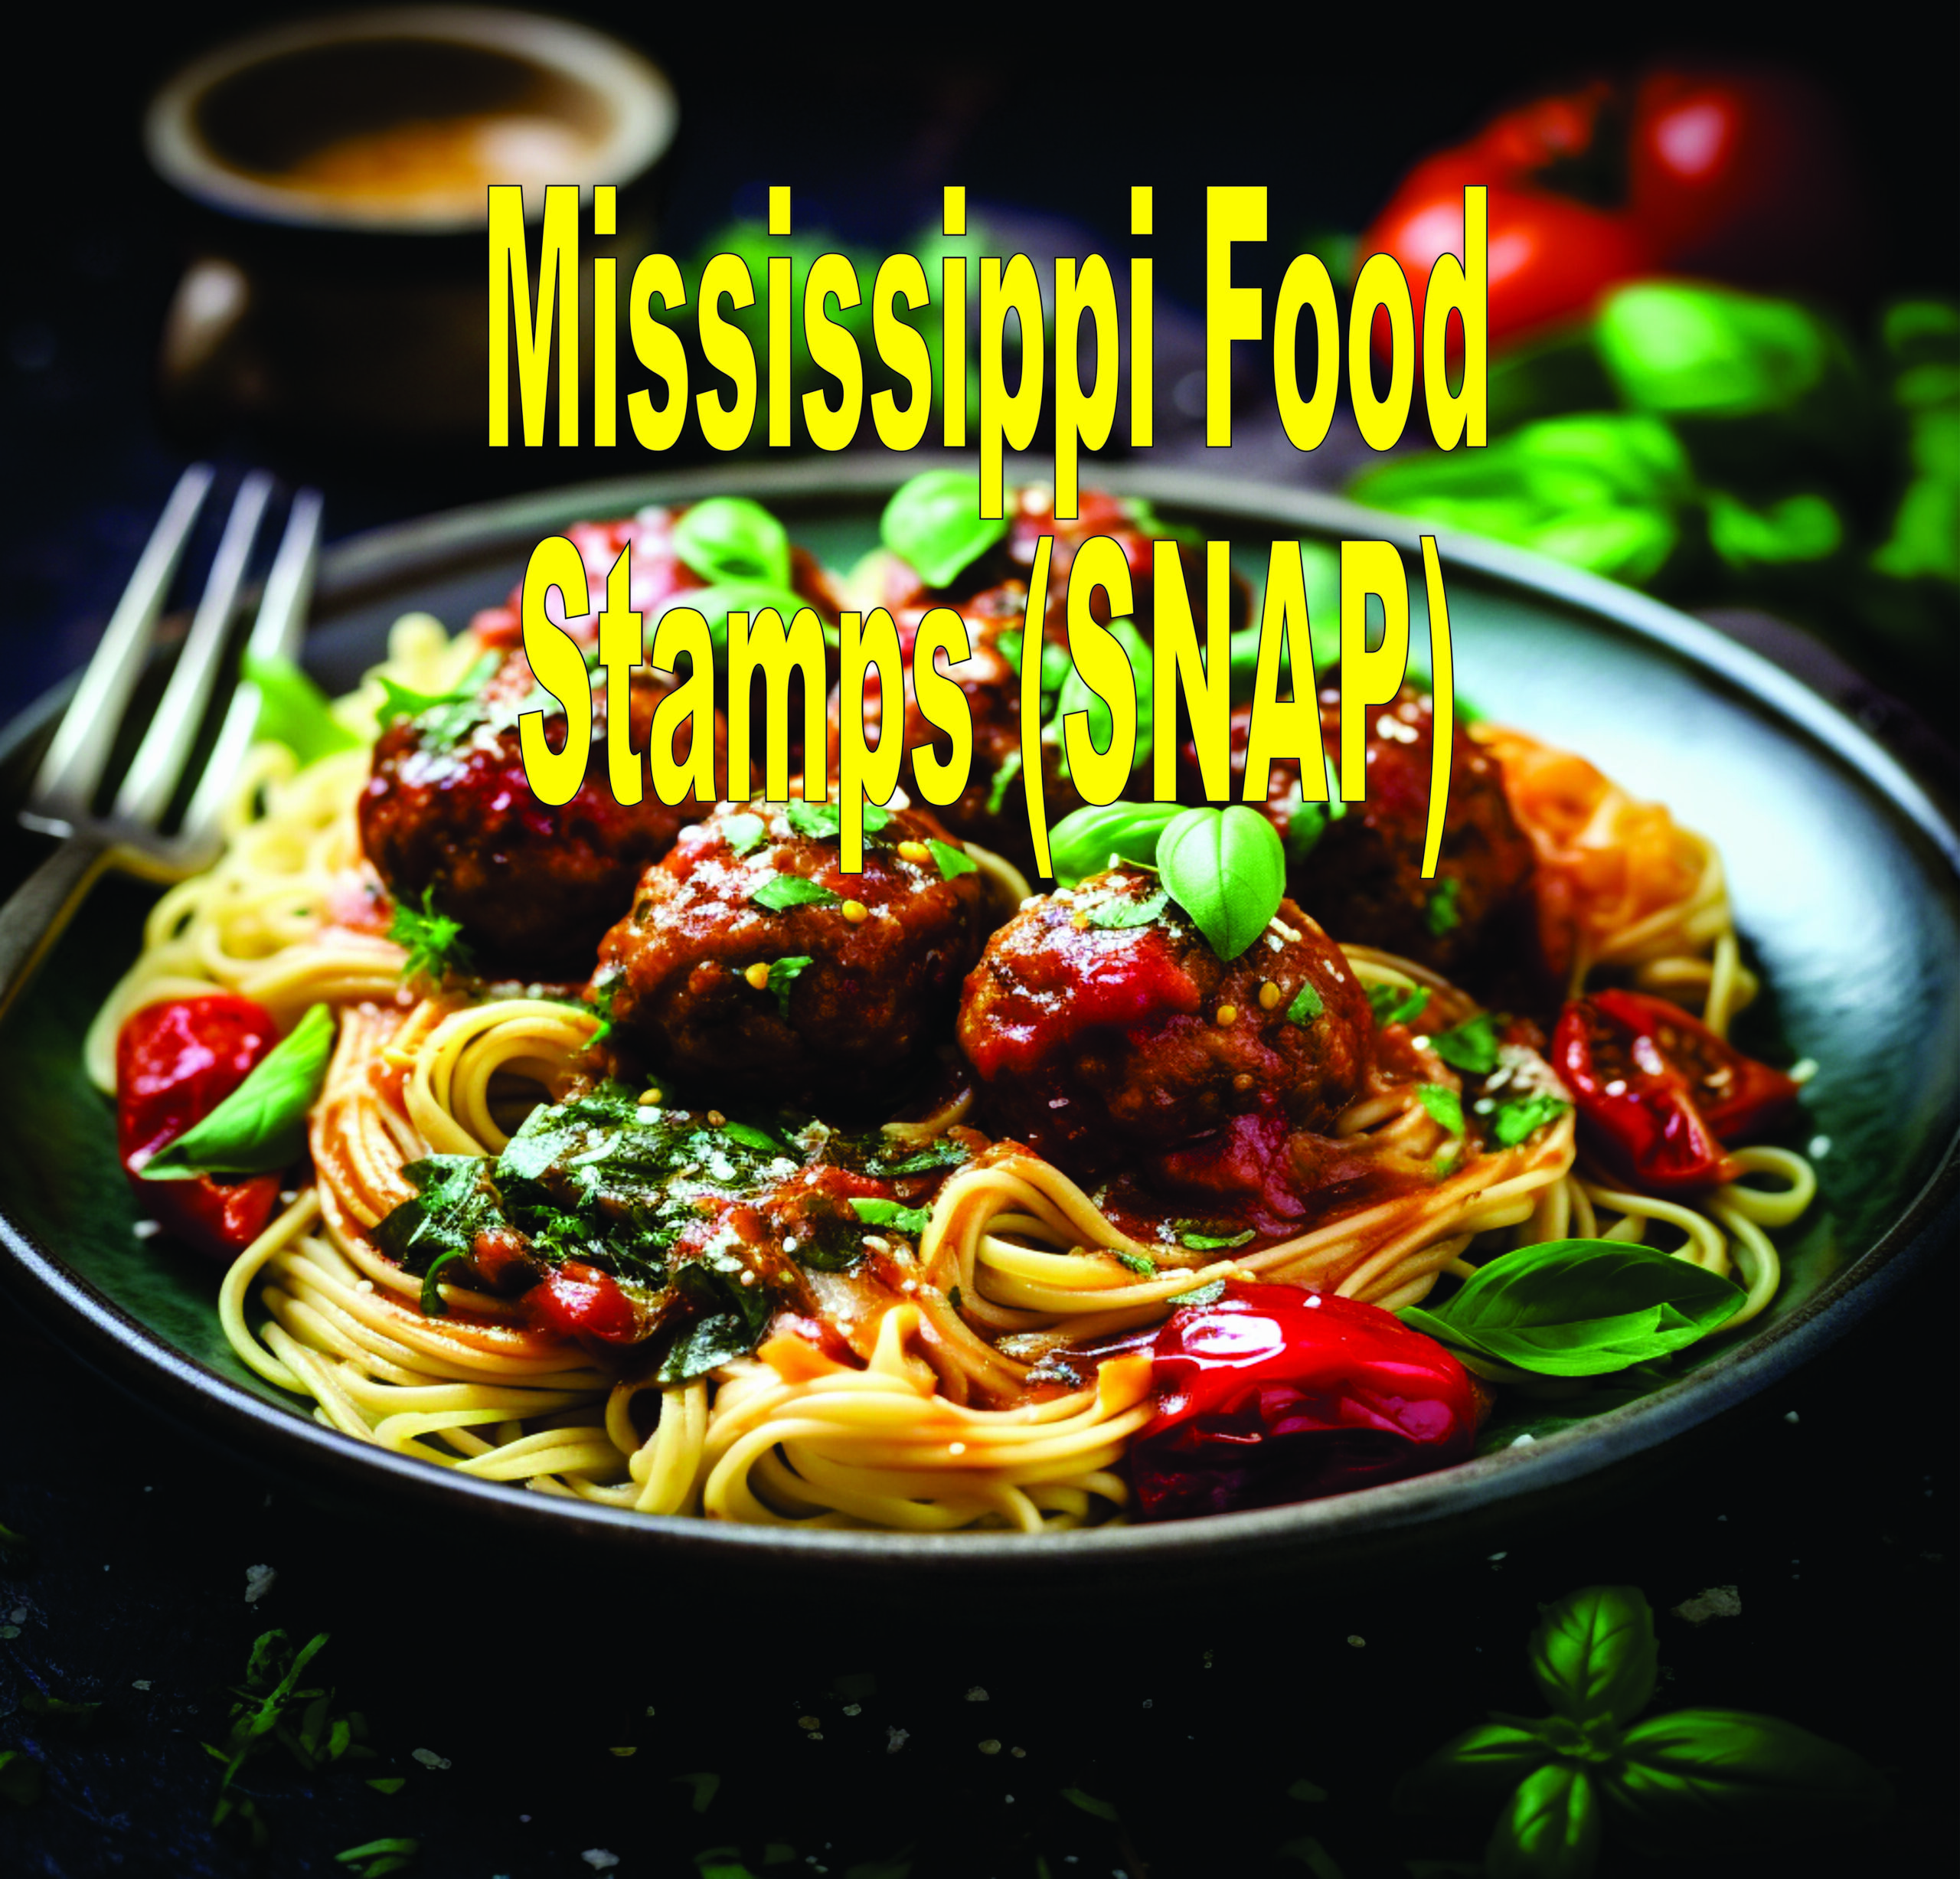 Mississippi Food Stamps (snap)